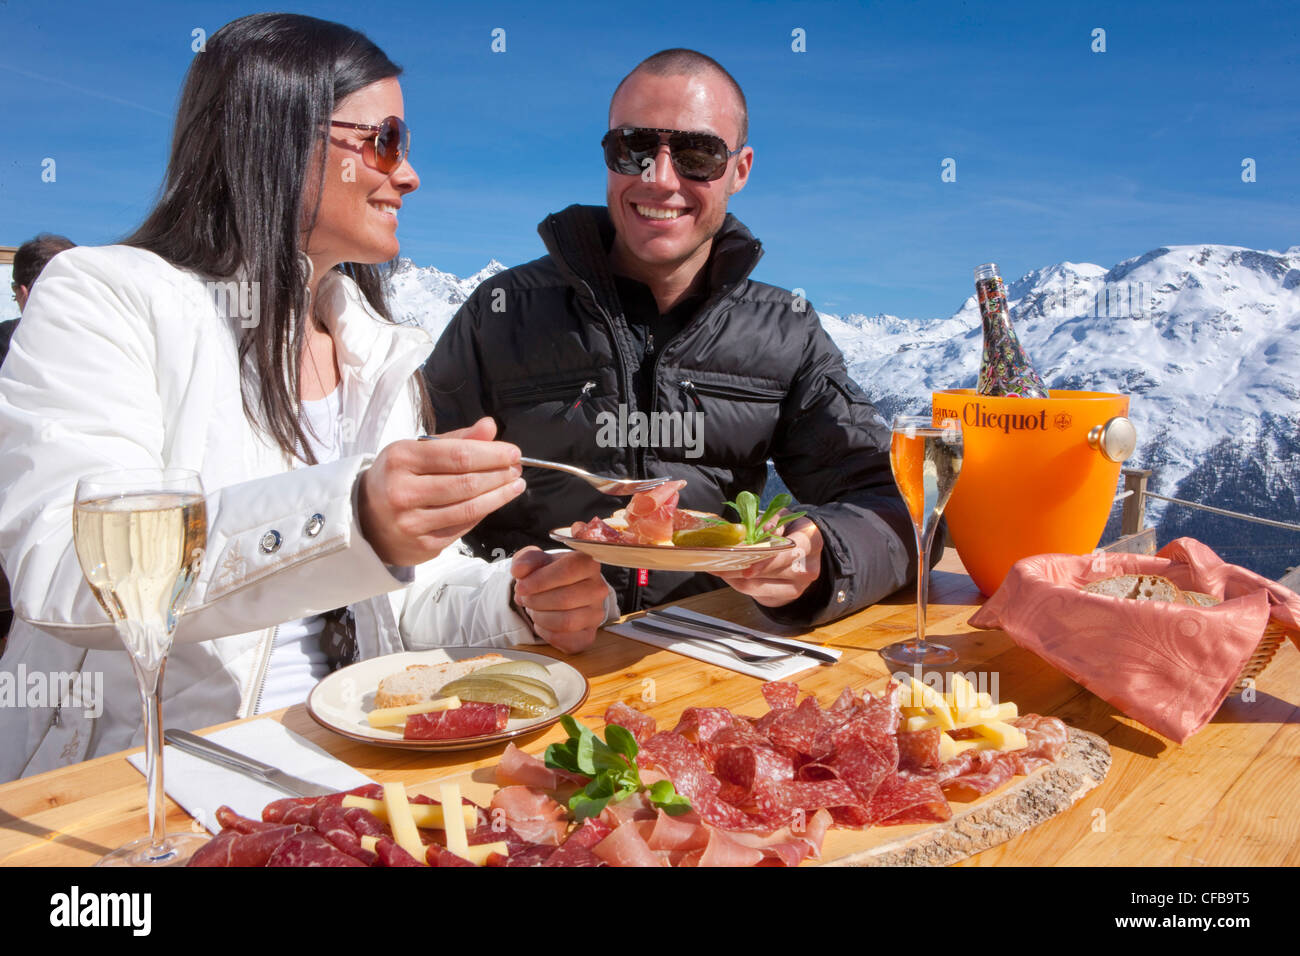 Tourismus, Urlaub, Kanton Graubünden, Graubünden, Schweiz, Europa, paar, Essen, Essen, Gastronomie, Restaurant, Hotel, d Stockfoto